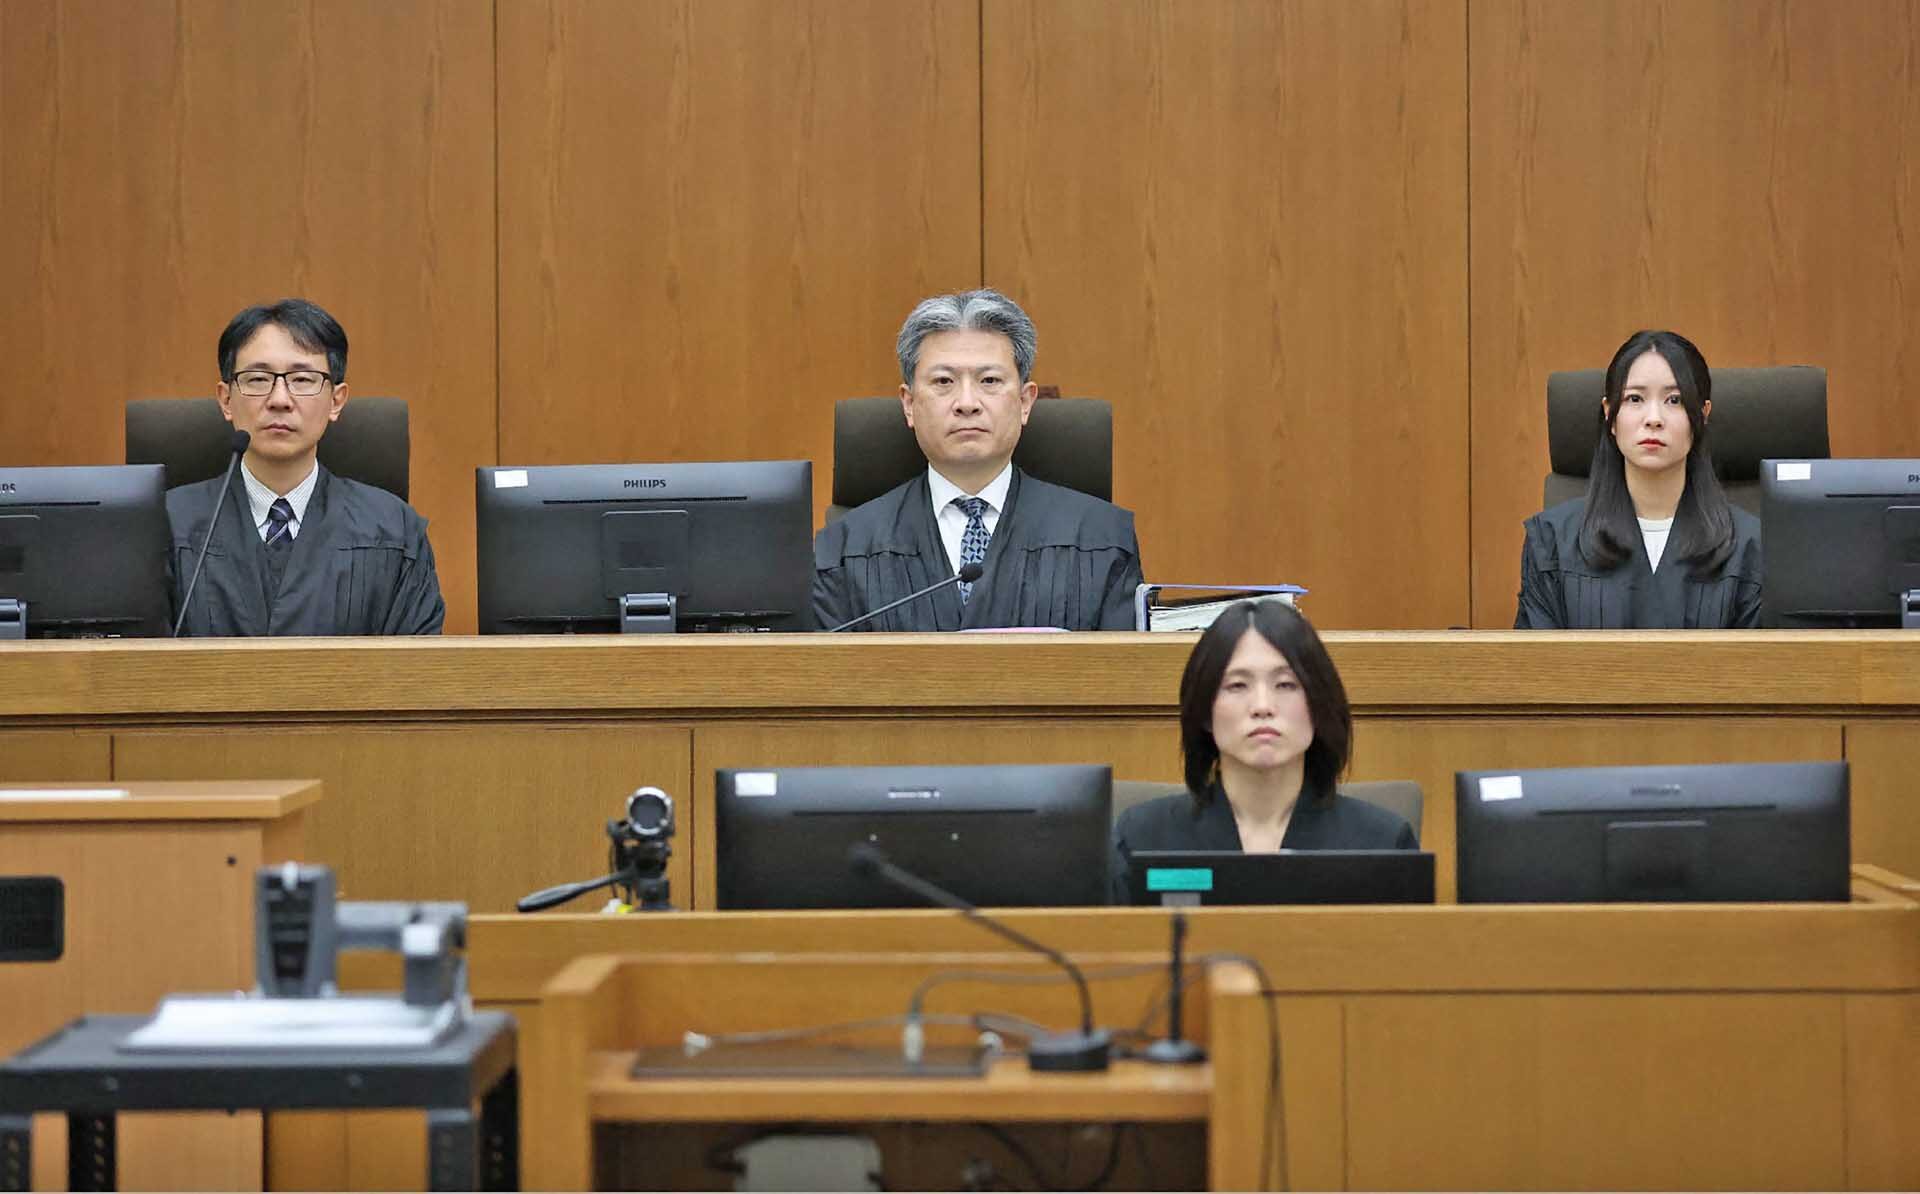 ศาลญี่ปุ่นตัดสินแล้ว “ประหารชีวิต” ชายวางเพลิงบริษัทแอนิเมชัน-สังหาร 36 ศพ